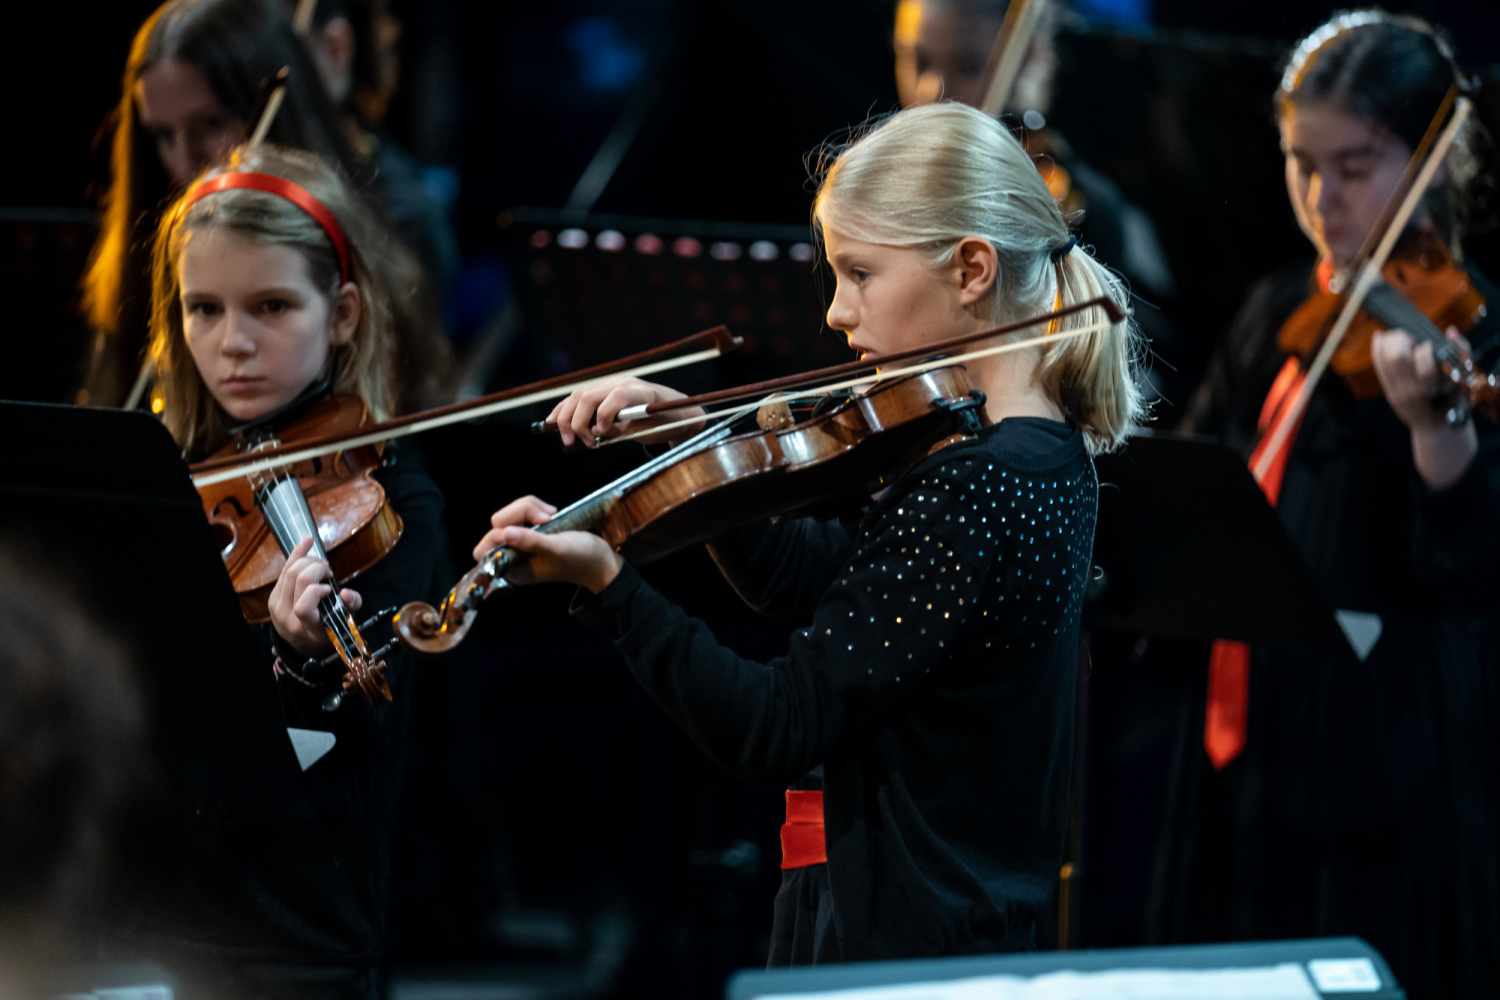 Mädchen mit blonden Haaren spielt Geige